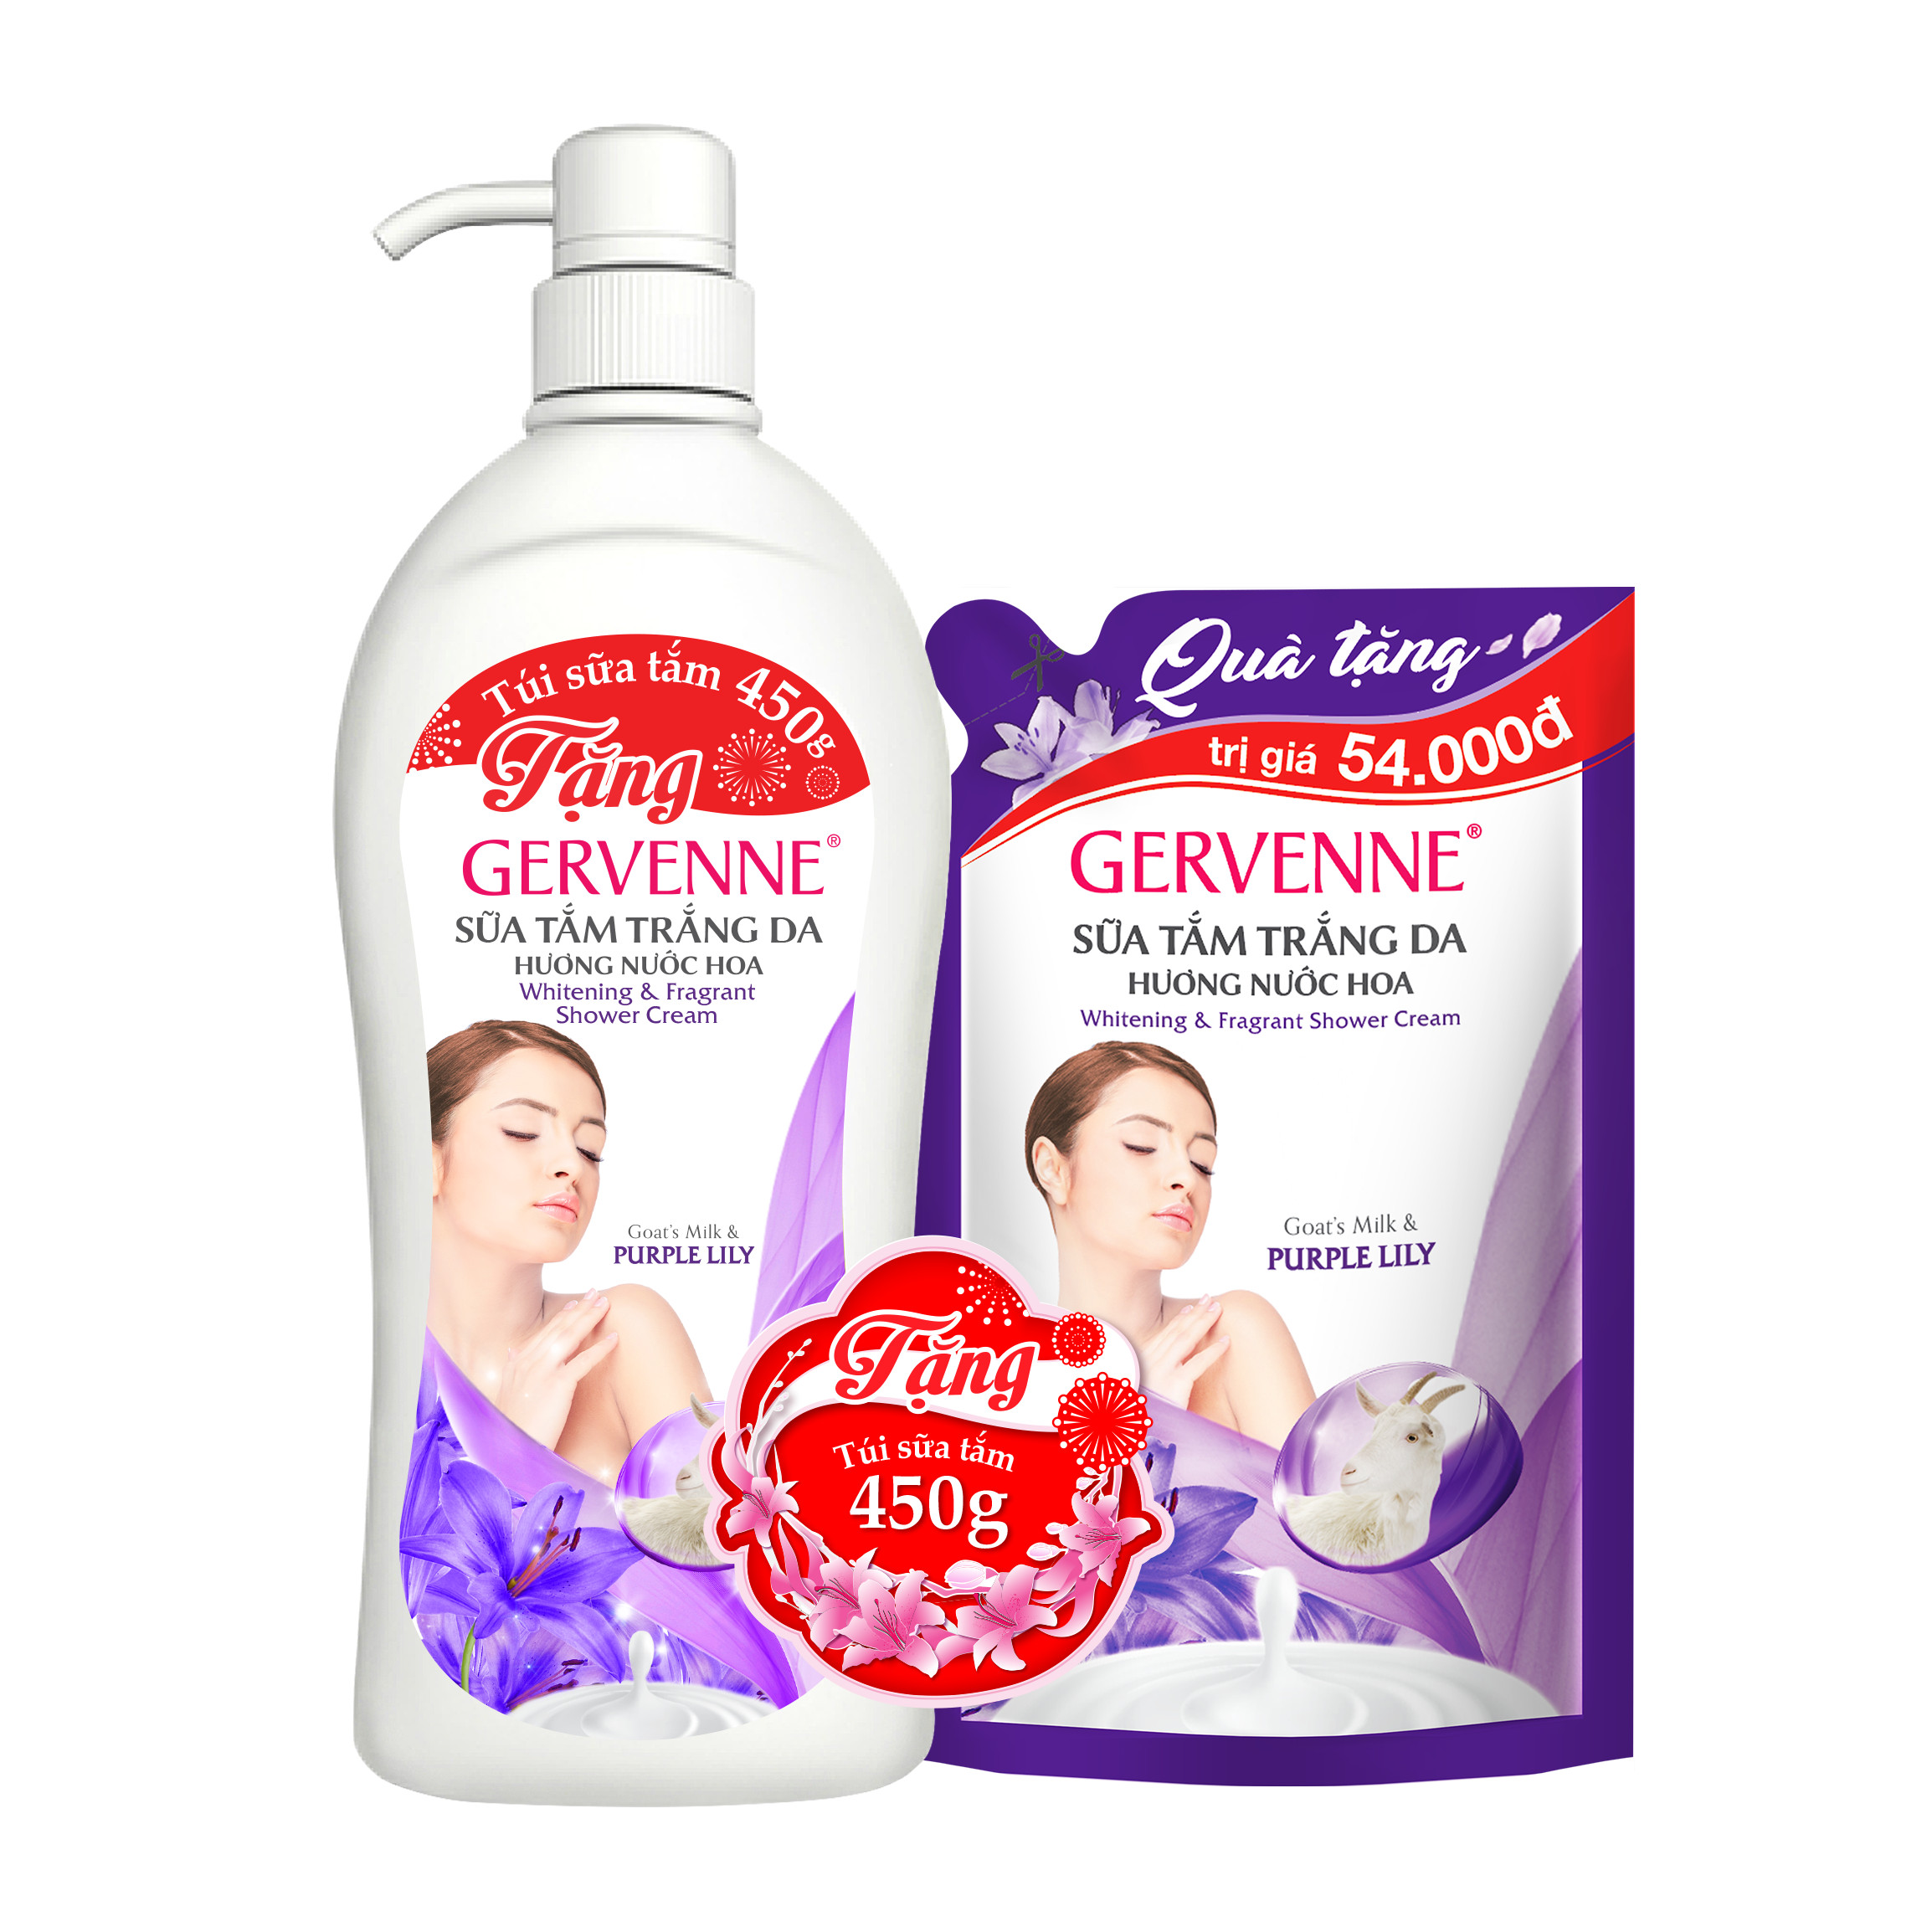 Gervenne Sữa tắm trắng da Purple Lily 1.2L - TẶNG Túi sữa tắm 450gr